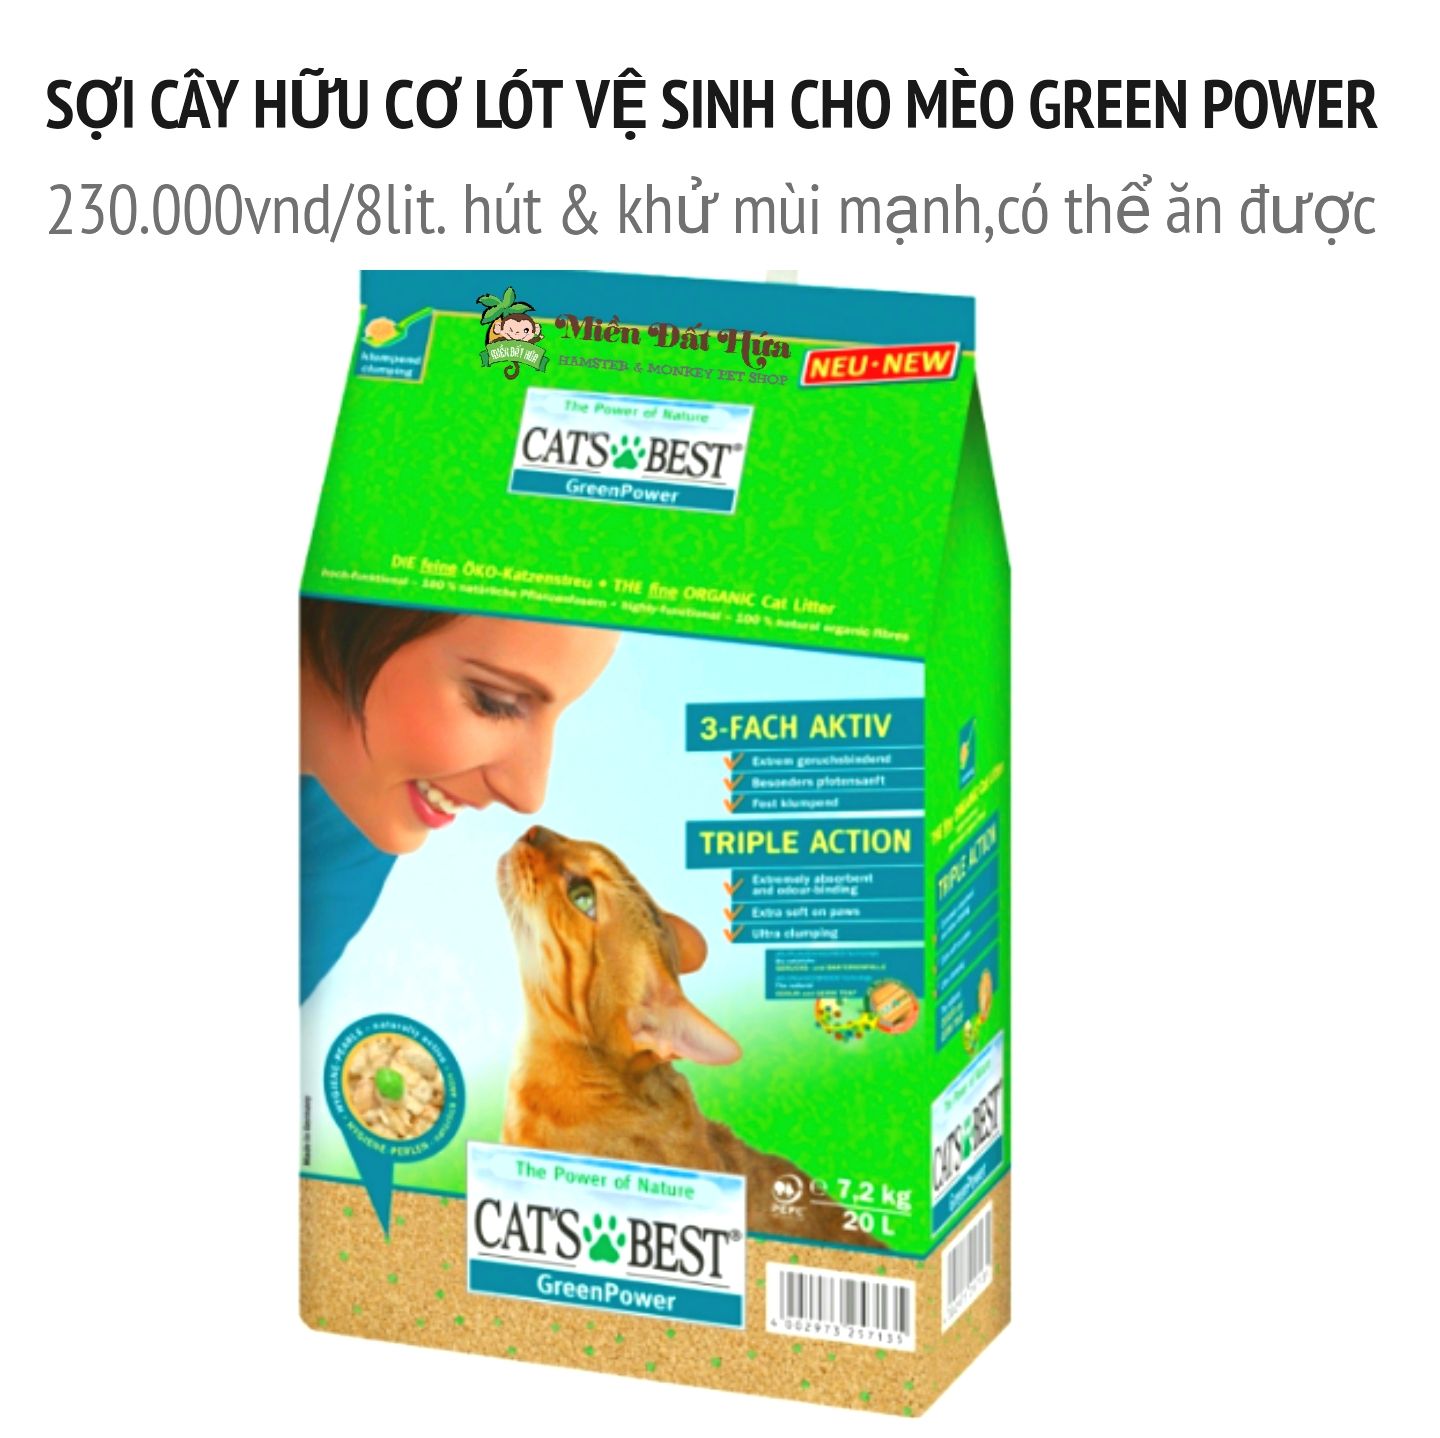 Sợi cây hữu cơ lót vệ sinh cho mèo green power 8lit